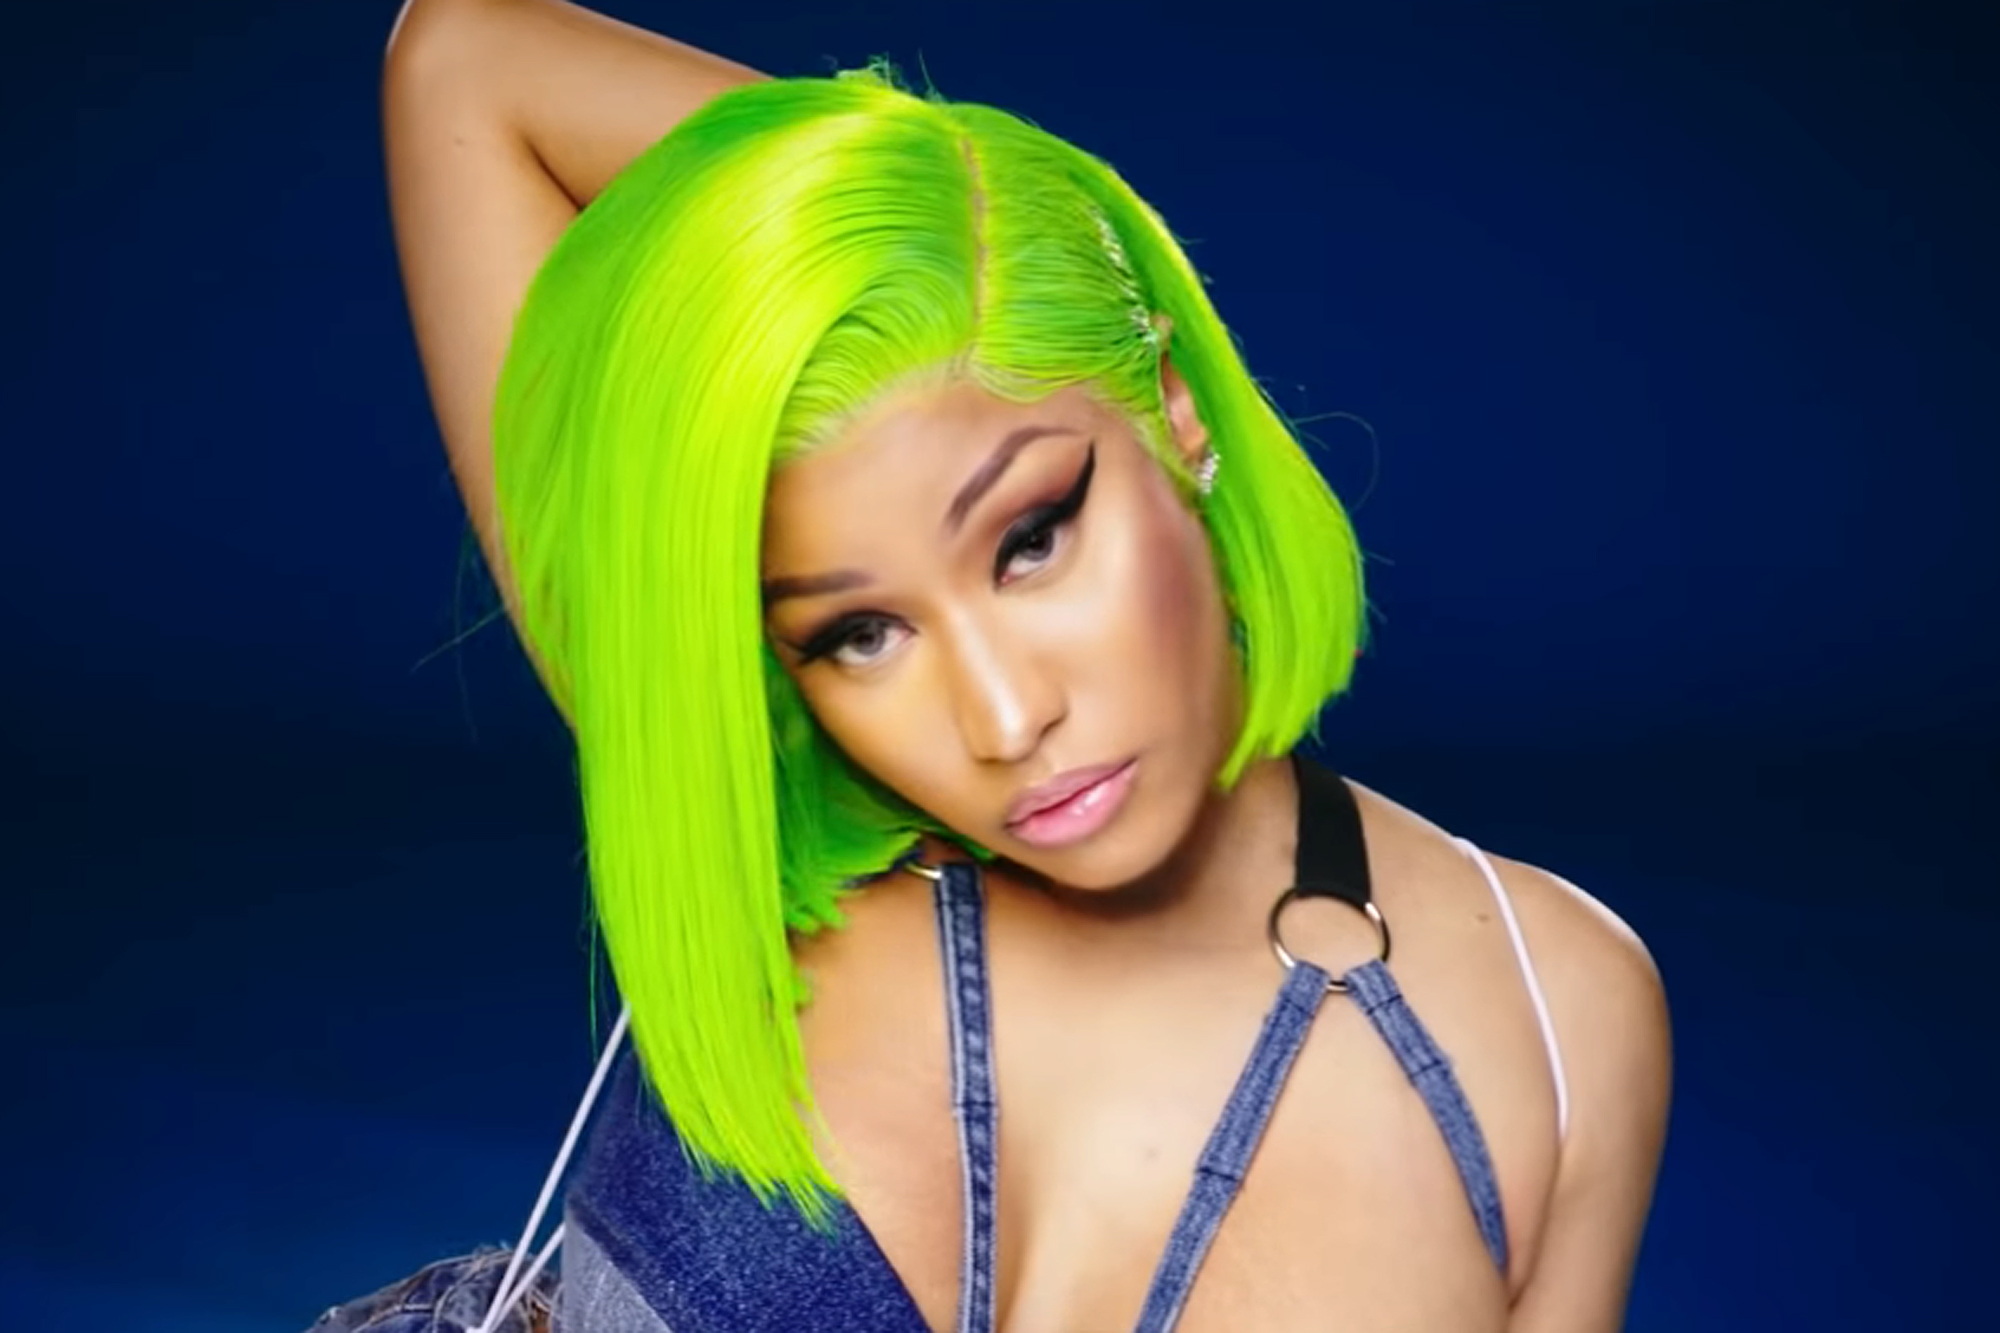 8. The Story Behind Nicki Minaj's Blonde Hair - wide 8